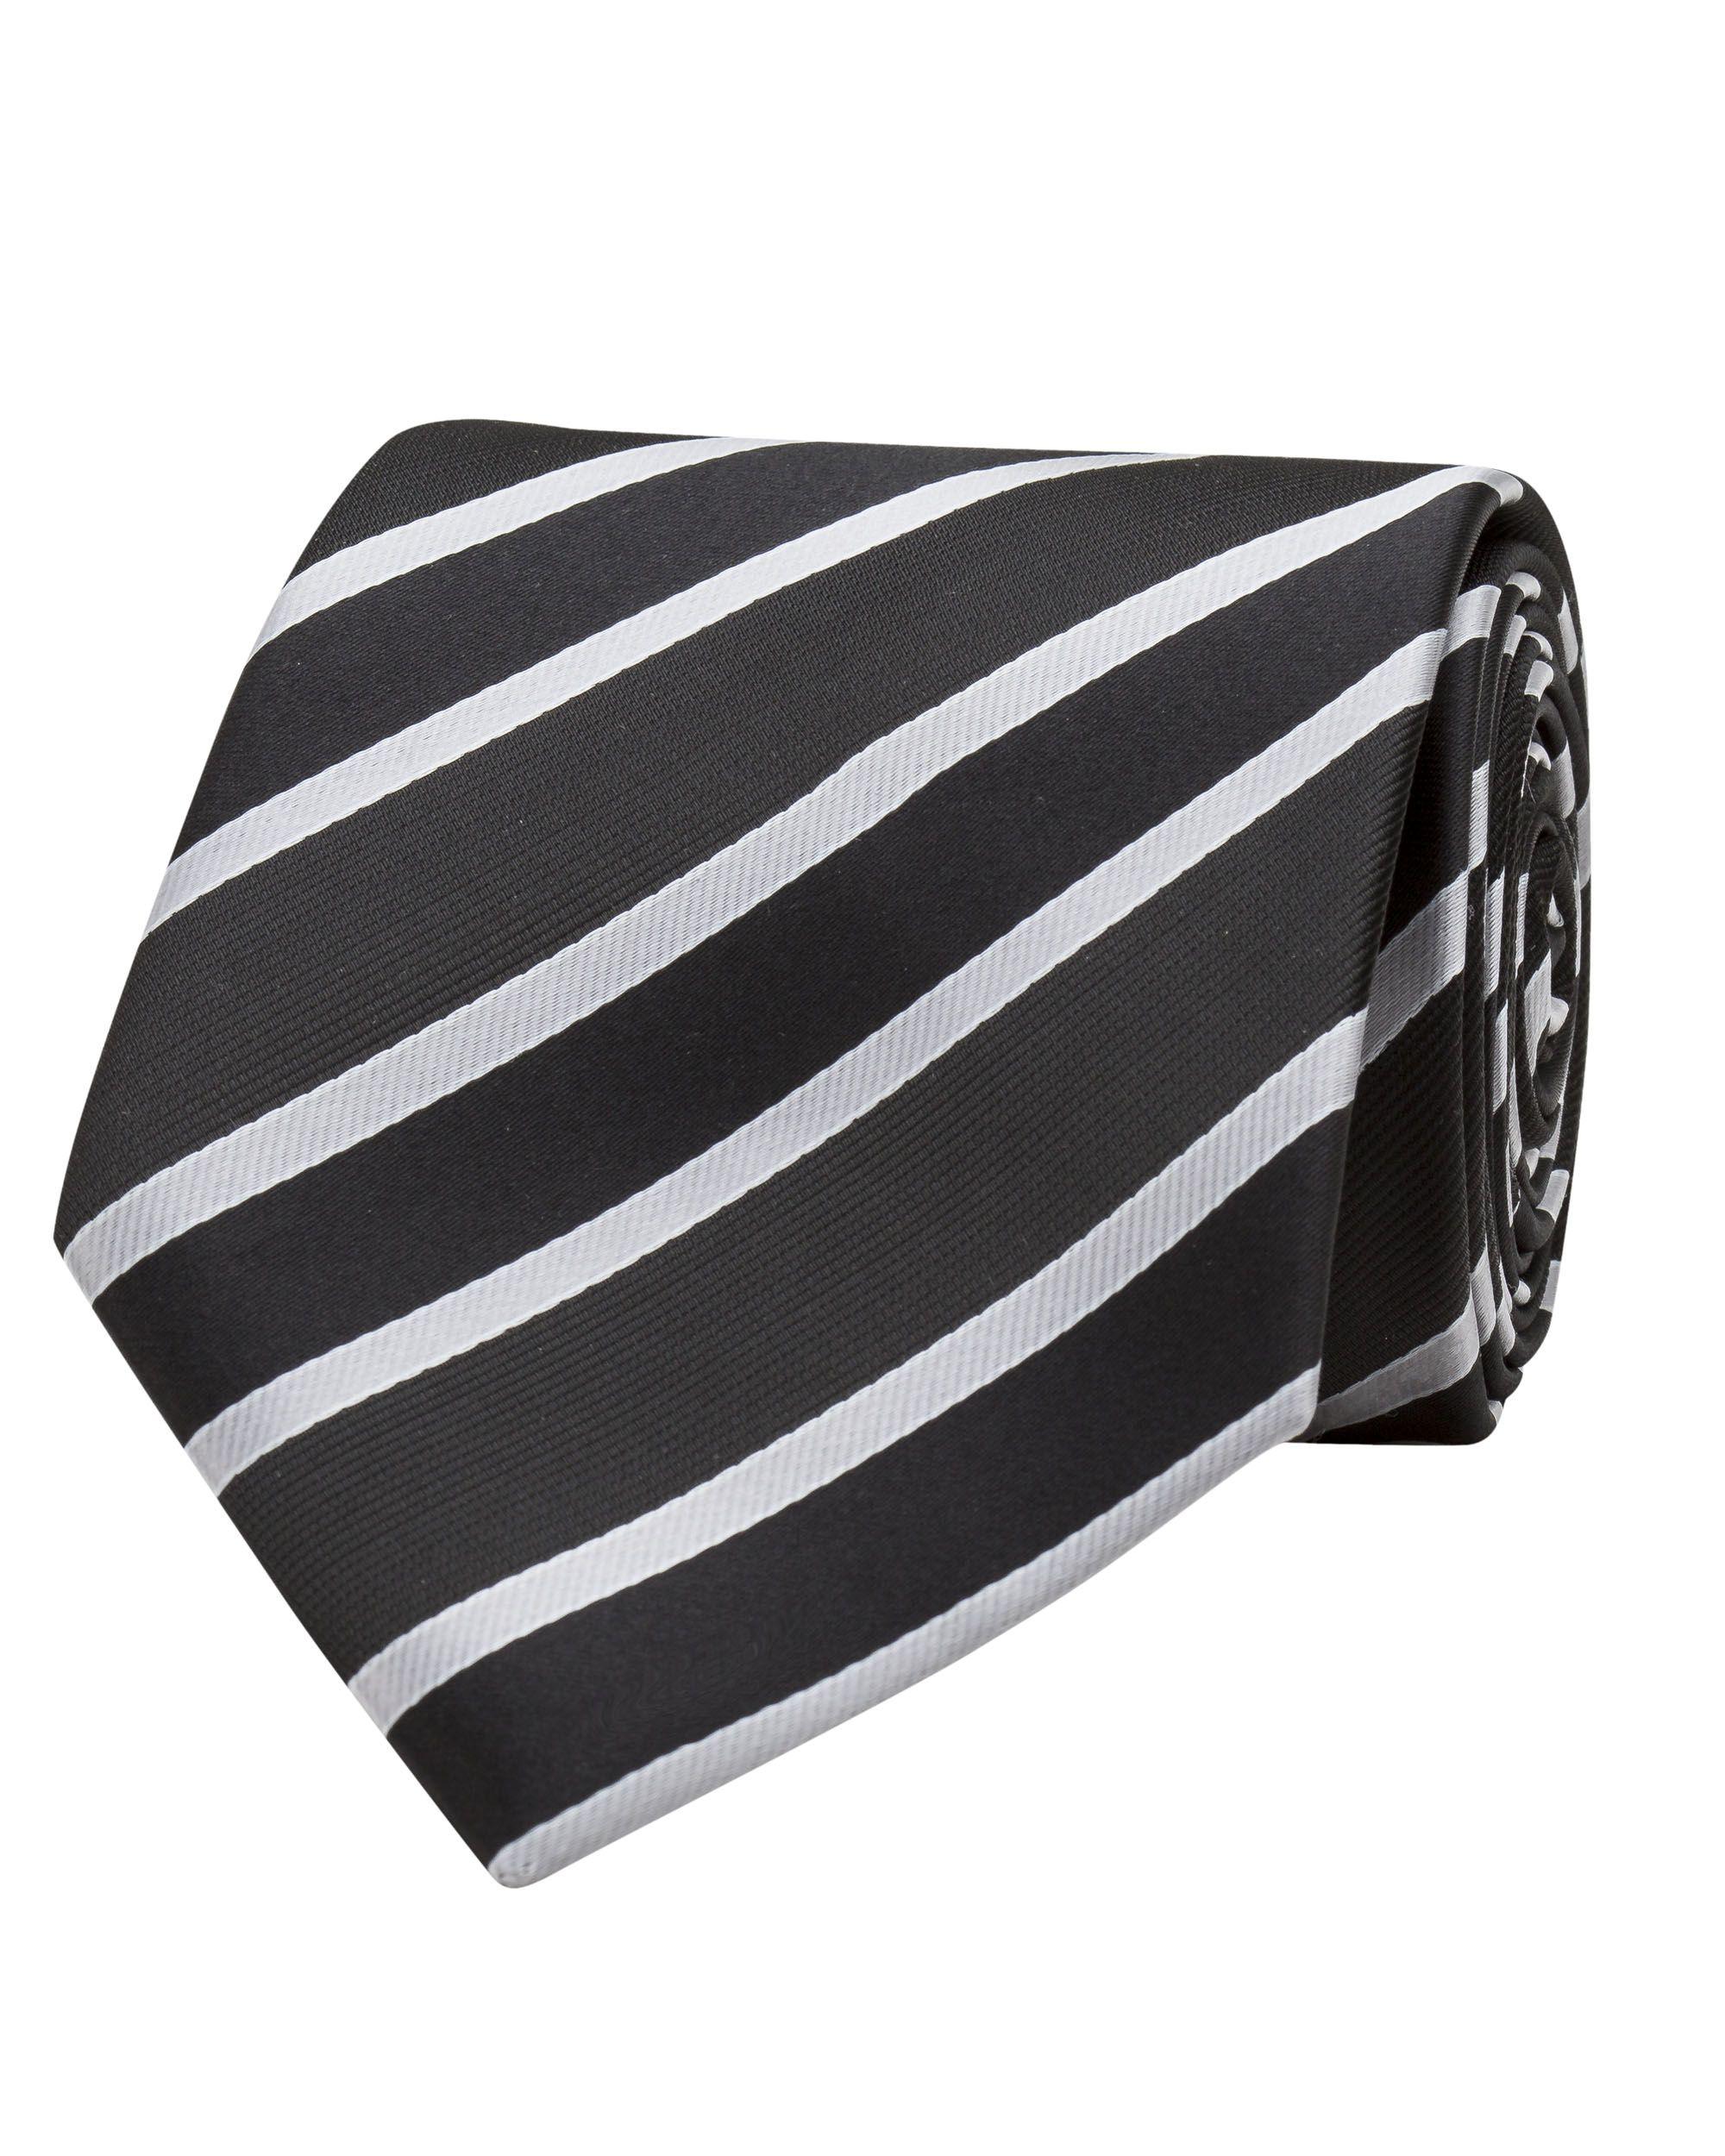 Repp Striped tie